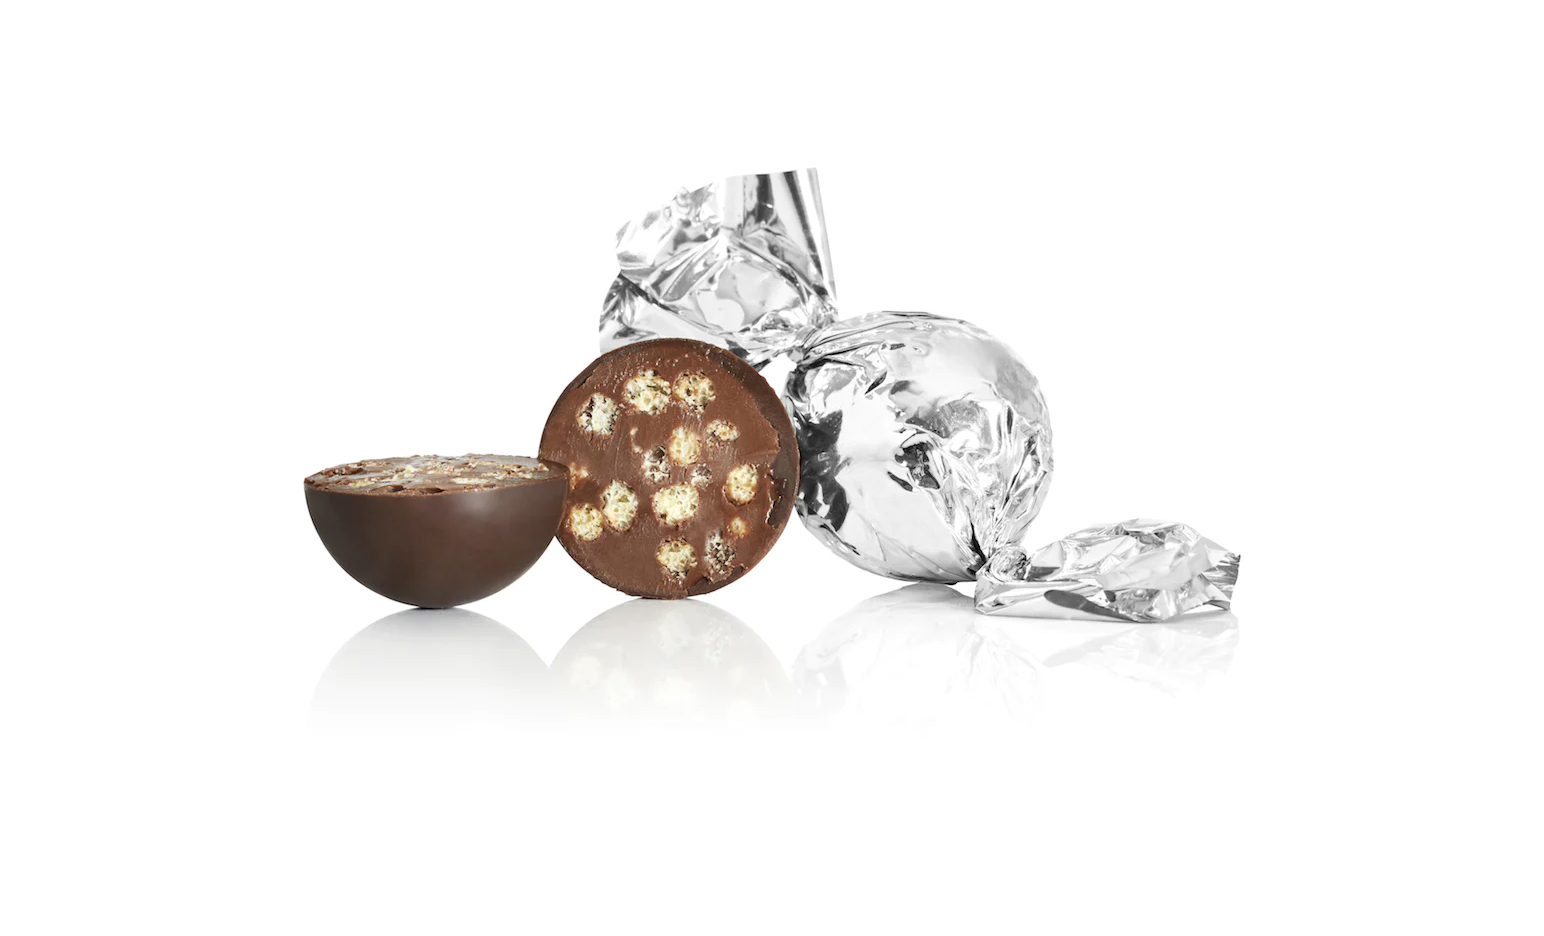 Billede af Fyldt chokoladekugle fra Cocoture i sølv papir - Mørk chokolade med crisp